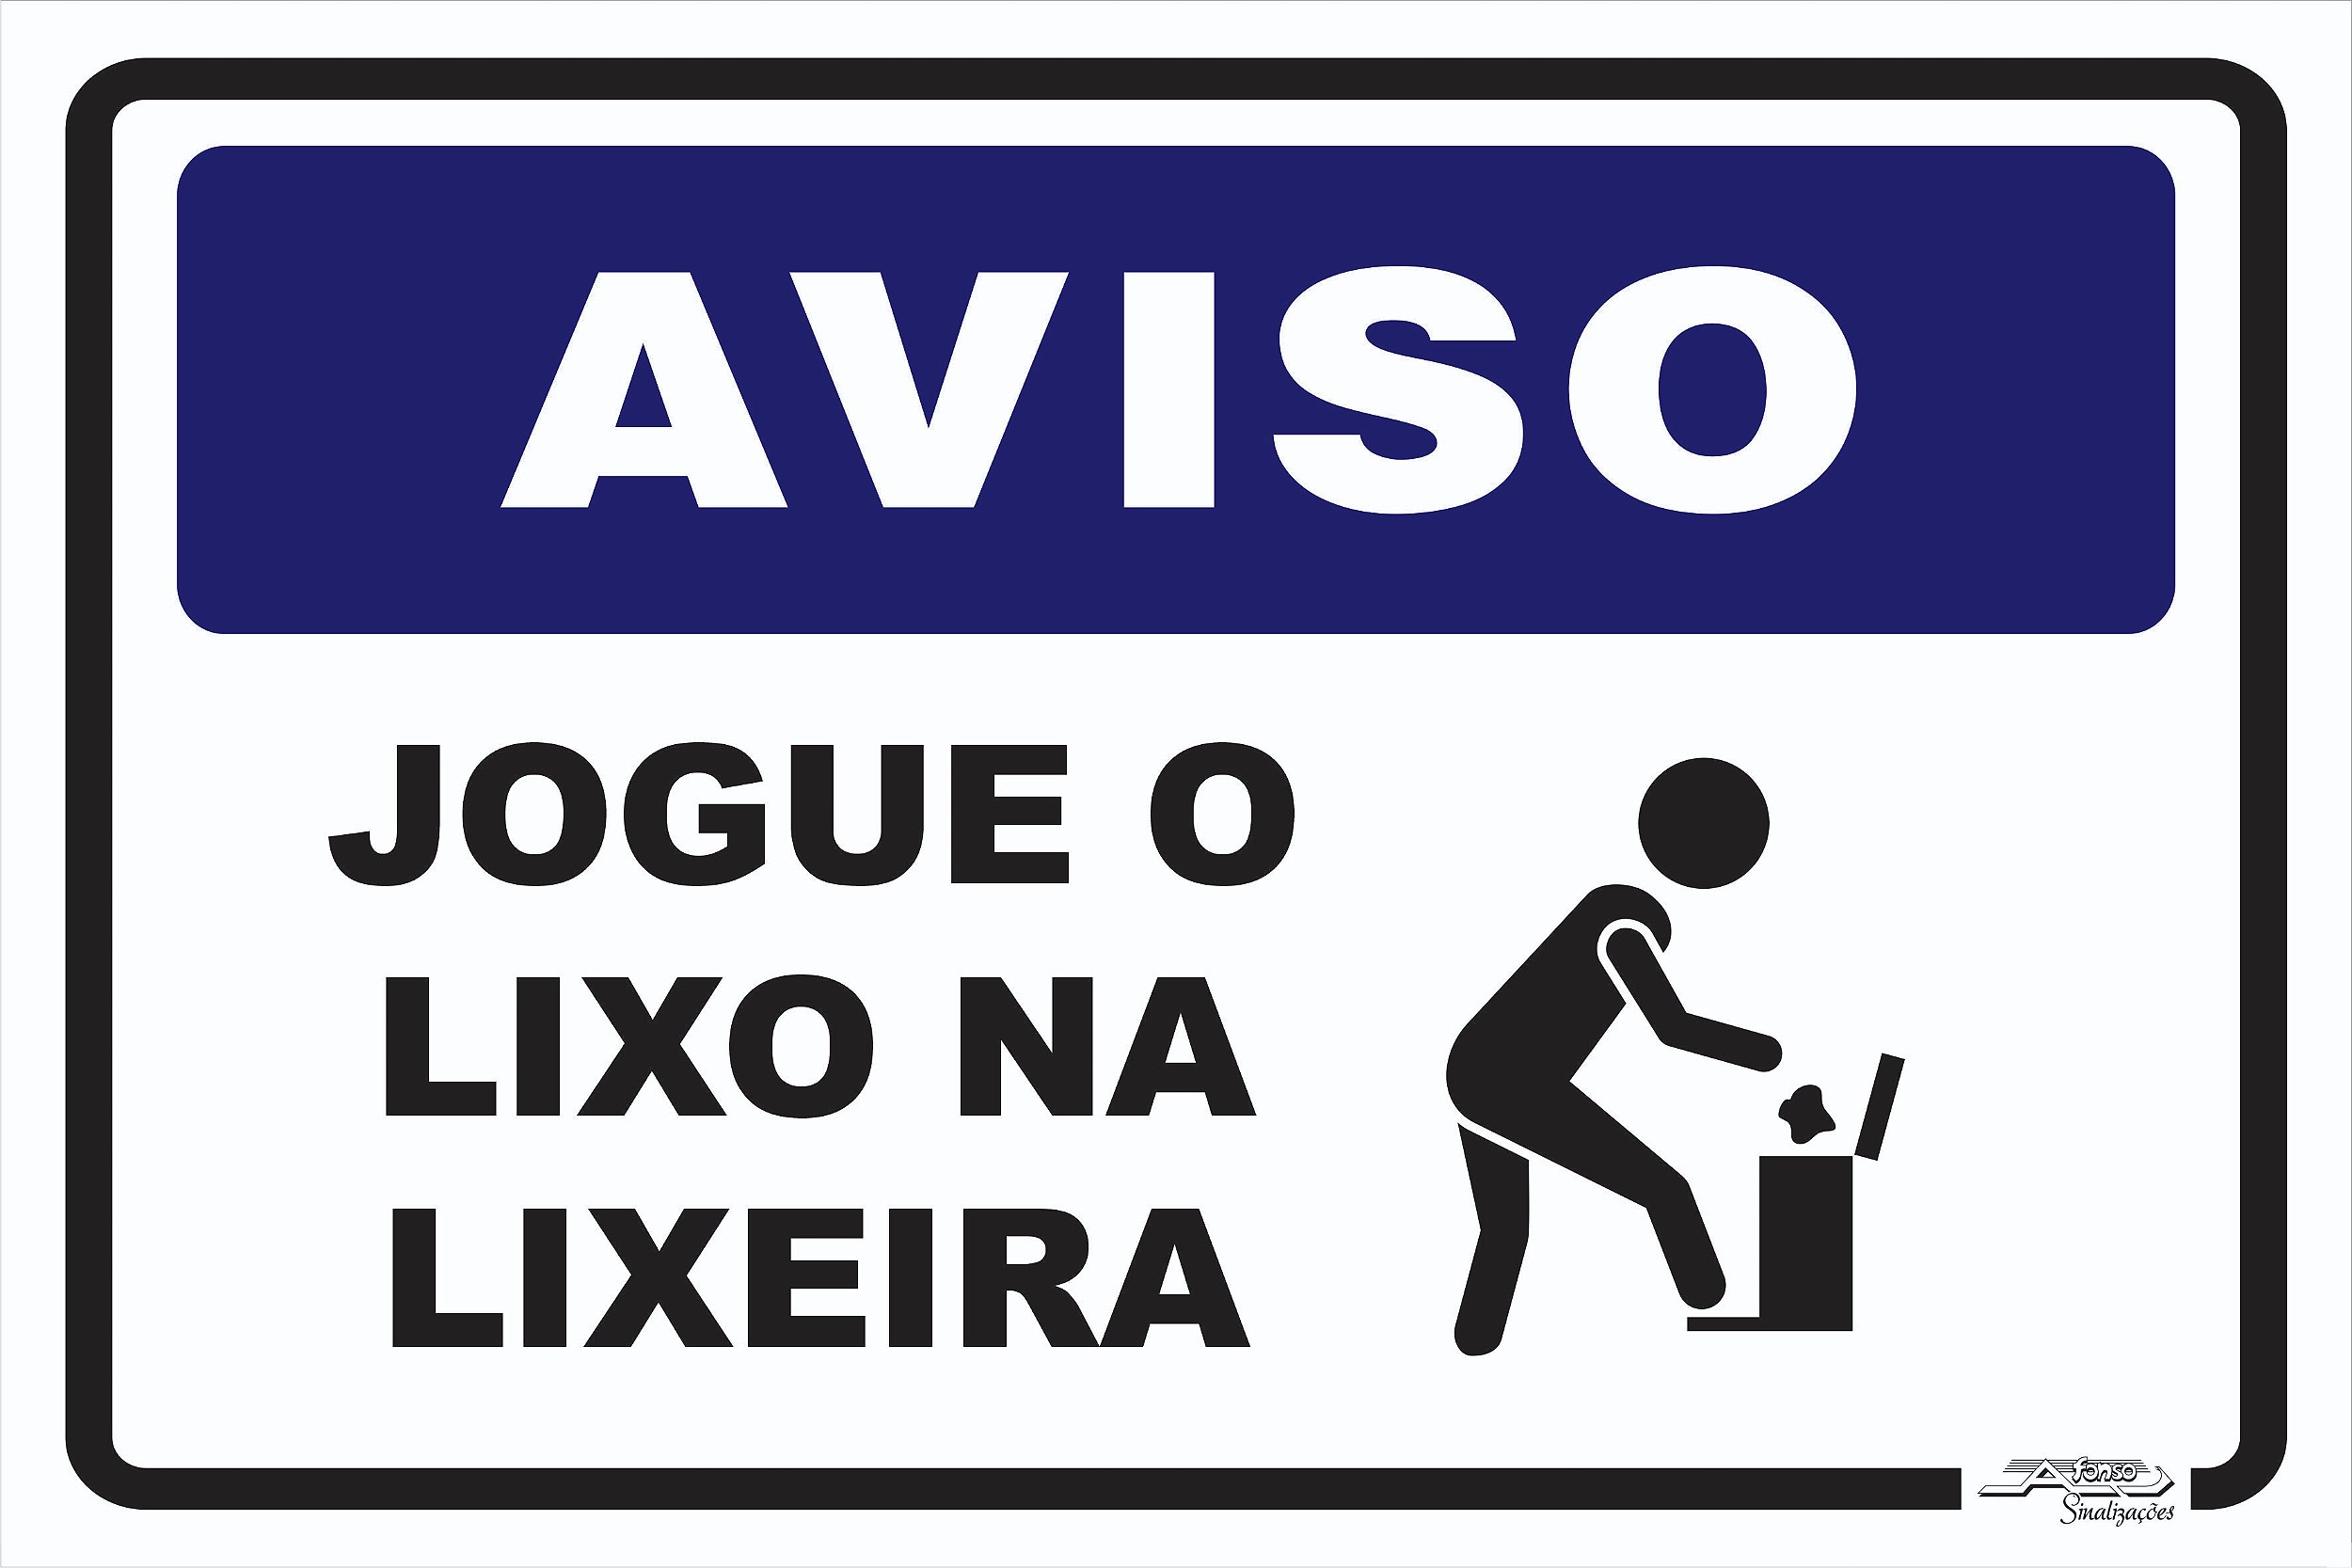 Placa Aviso Jogue o Lixo na Lixeira - Afonso Adesivos